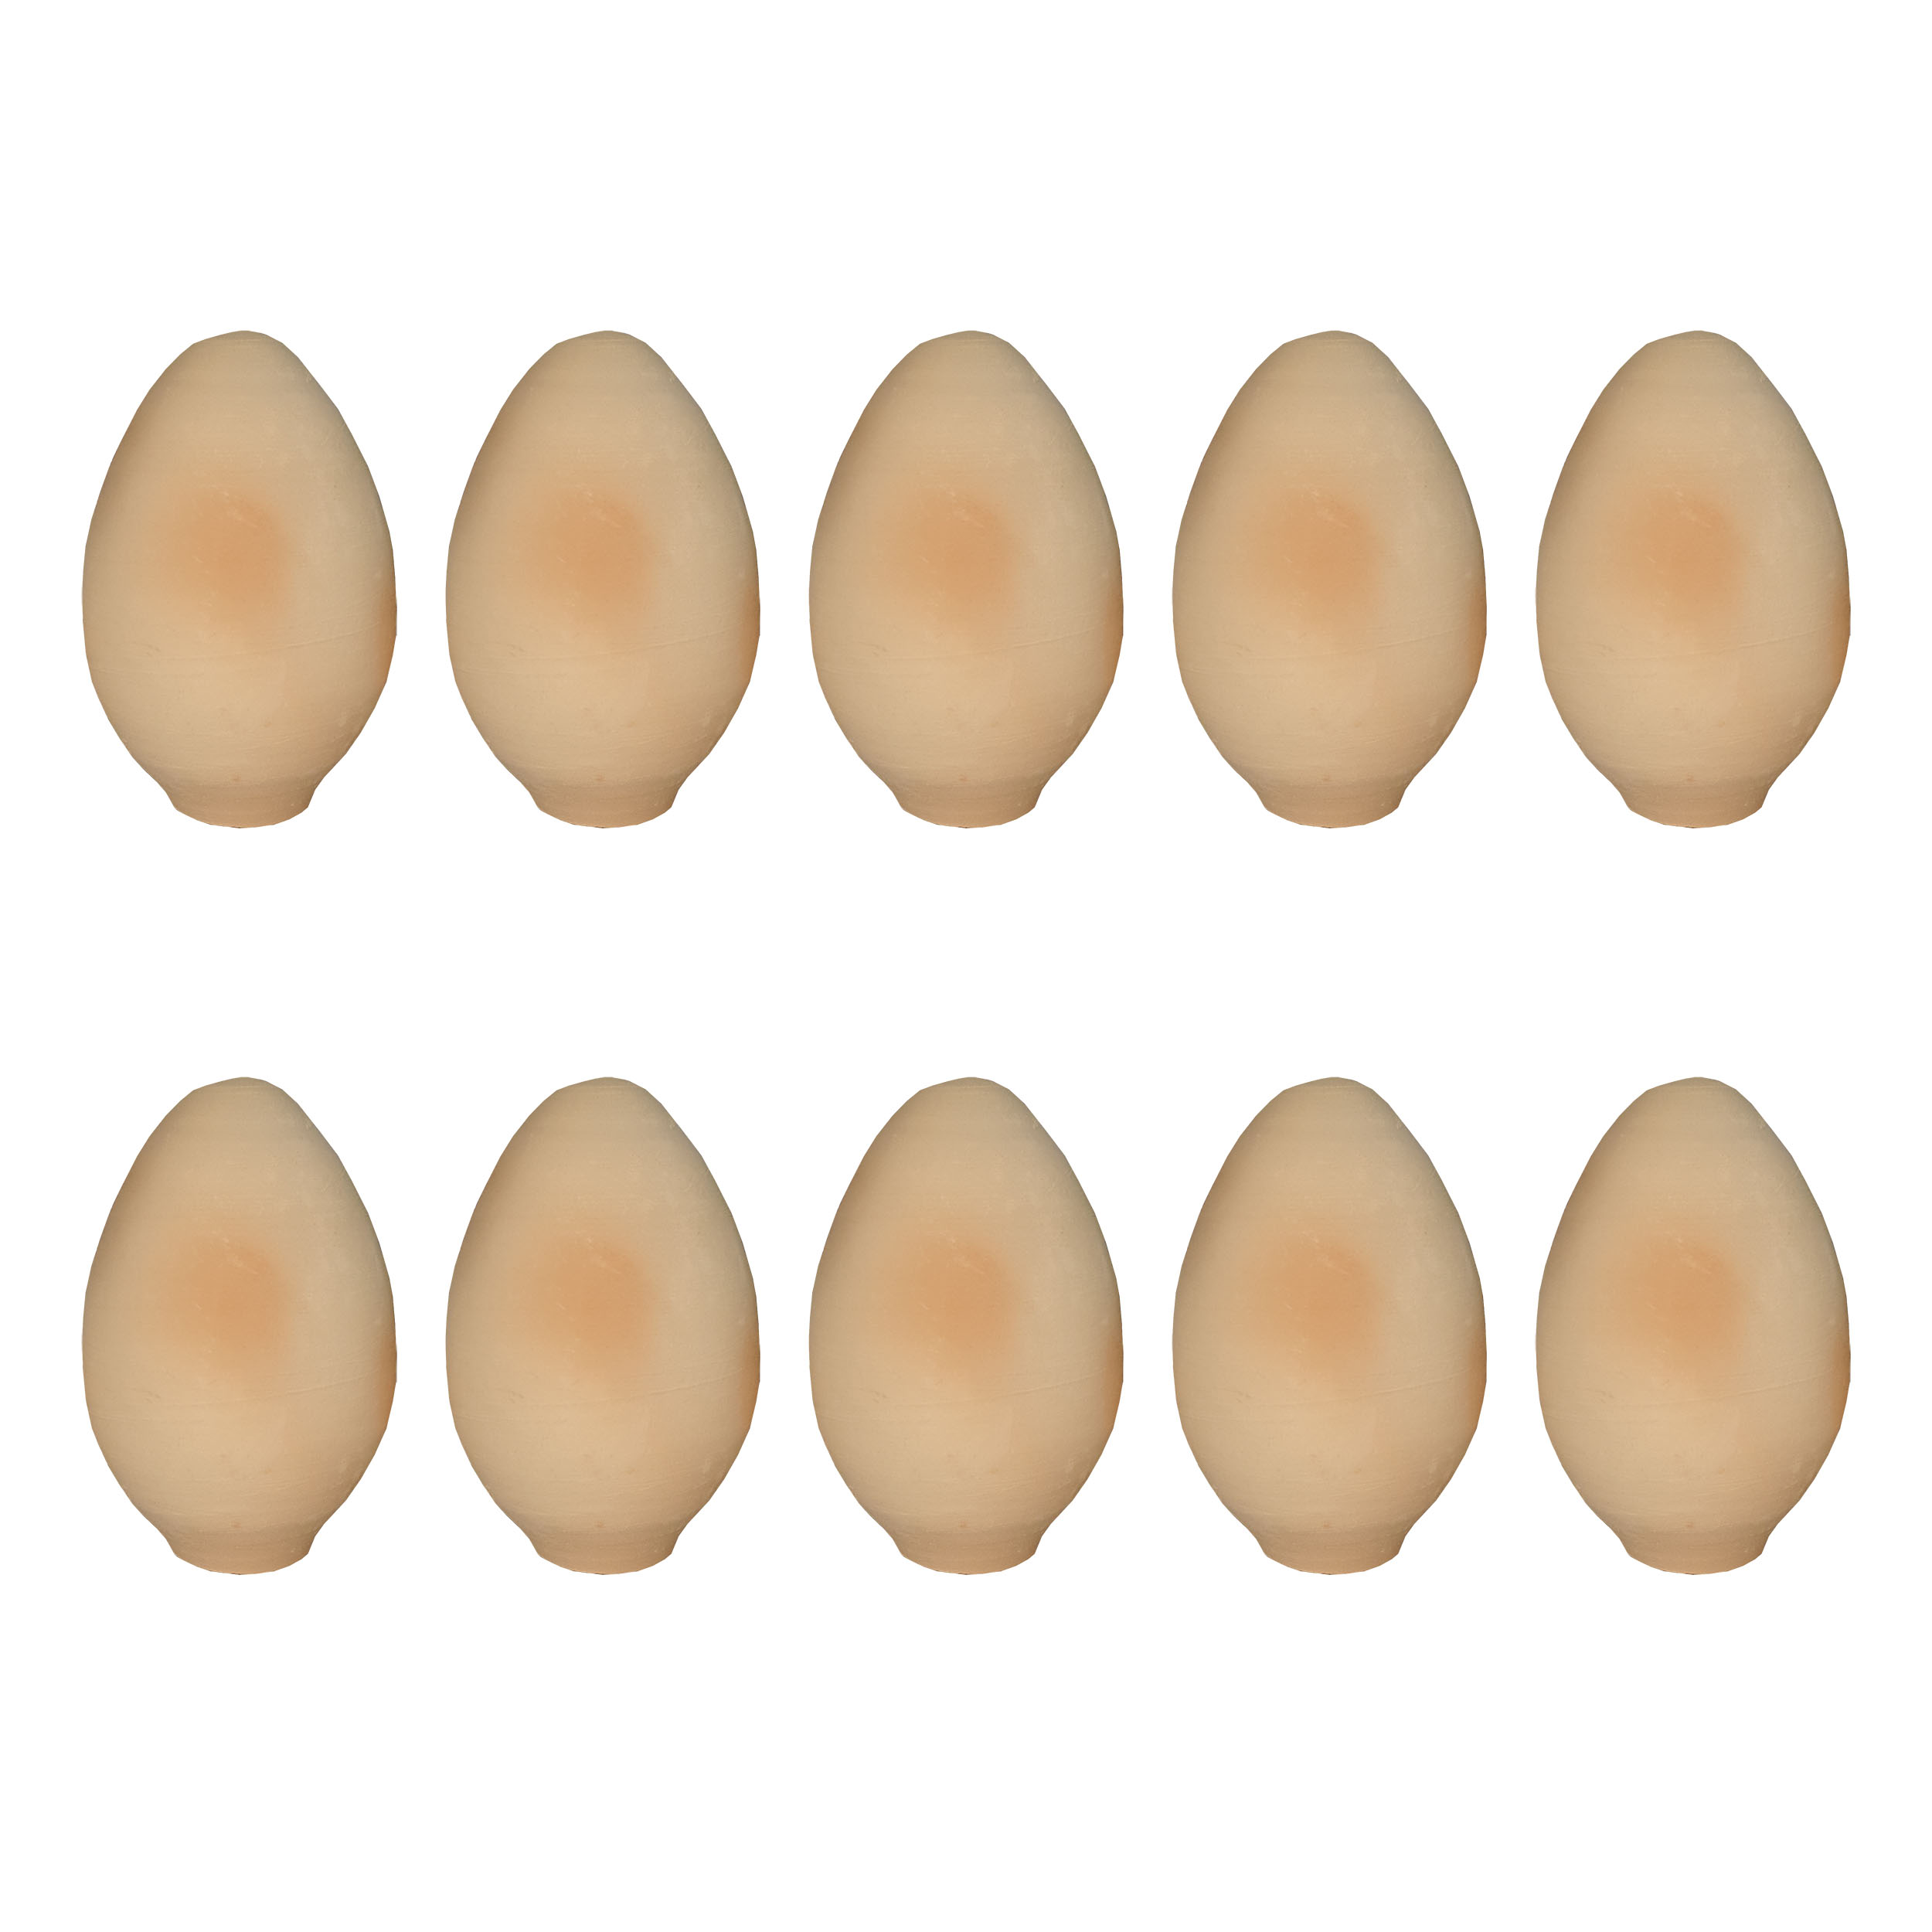 تخم مرغ سفالی خام کد 20 مجموعه 10 عددی